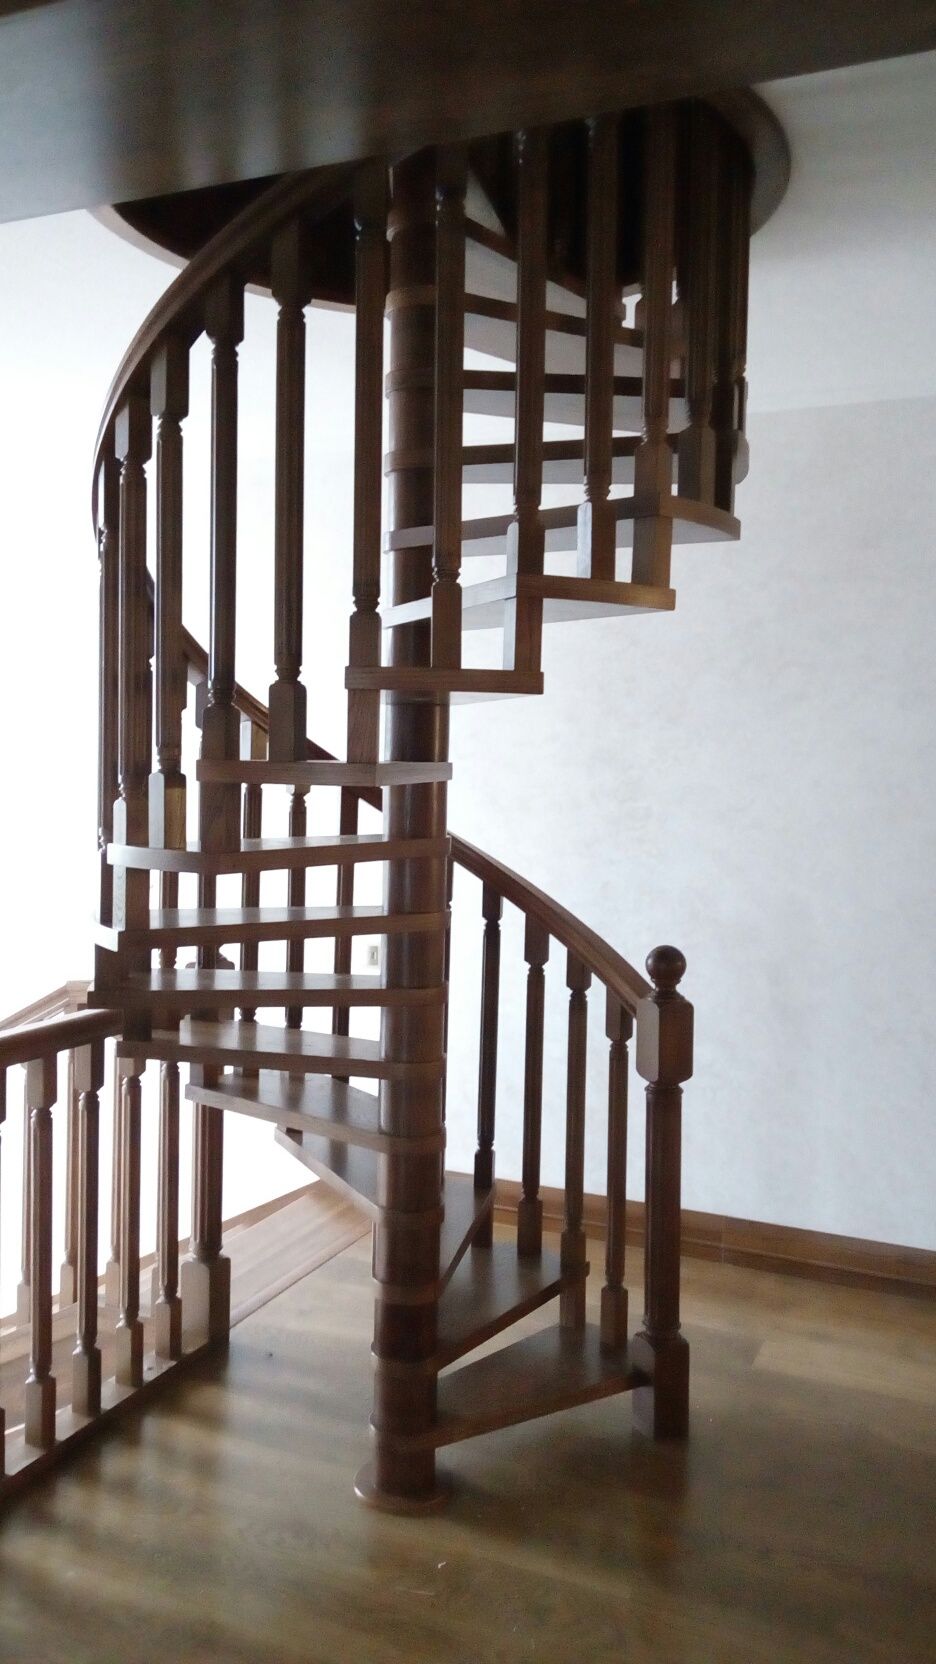 Столярный цех лестницы двери арки мебель шпон дуб конструкции